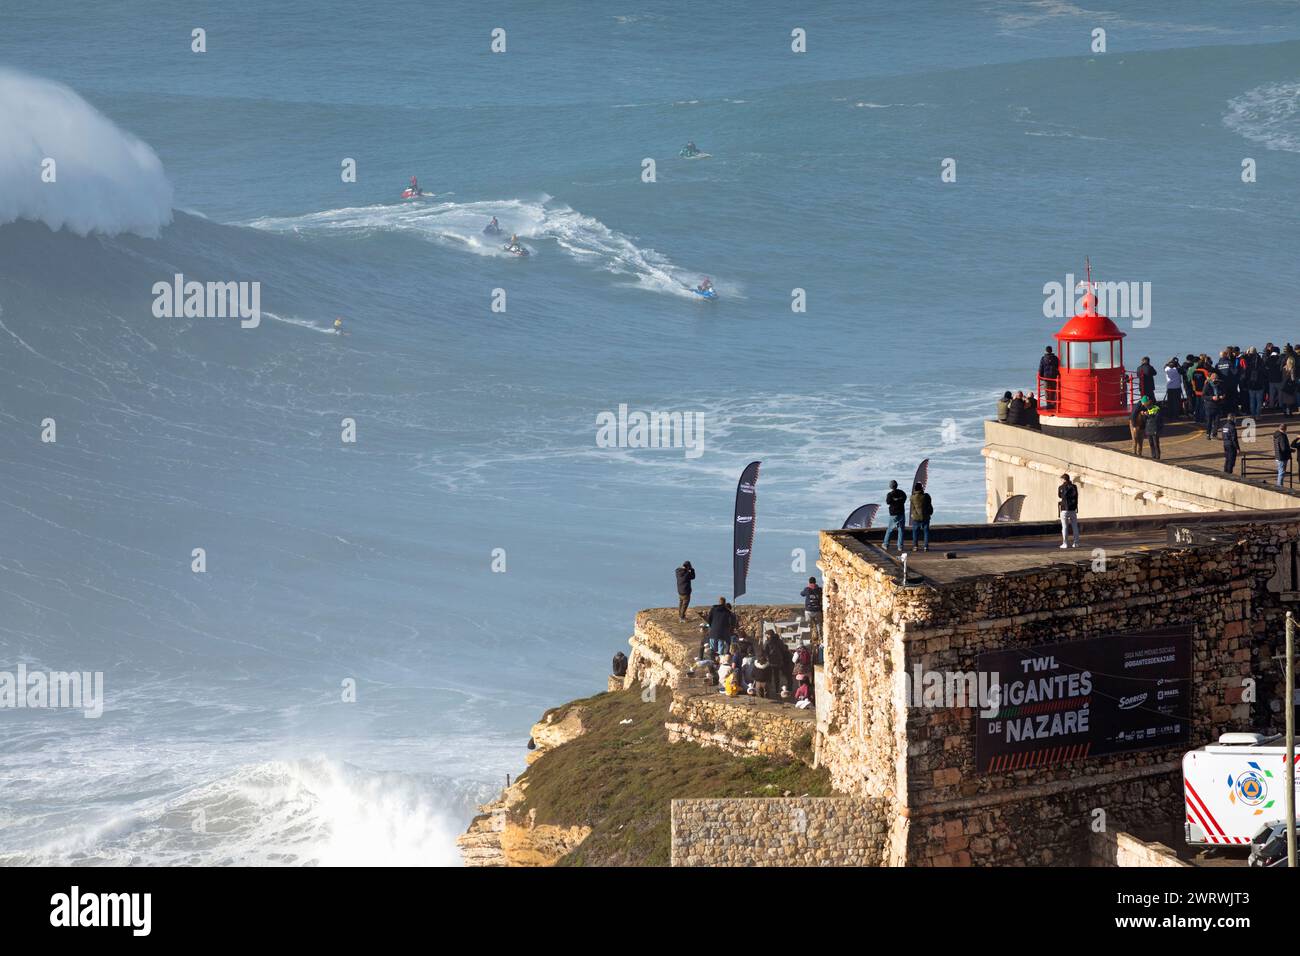 Europa, Portugal, Region Oeste, Nazaré, Surfer und Support Jet Skis auf riesigen Wellen in der Nähe von Praia do Norte während des Free Surfing Event 2022 Stockfoto